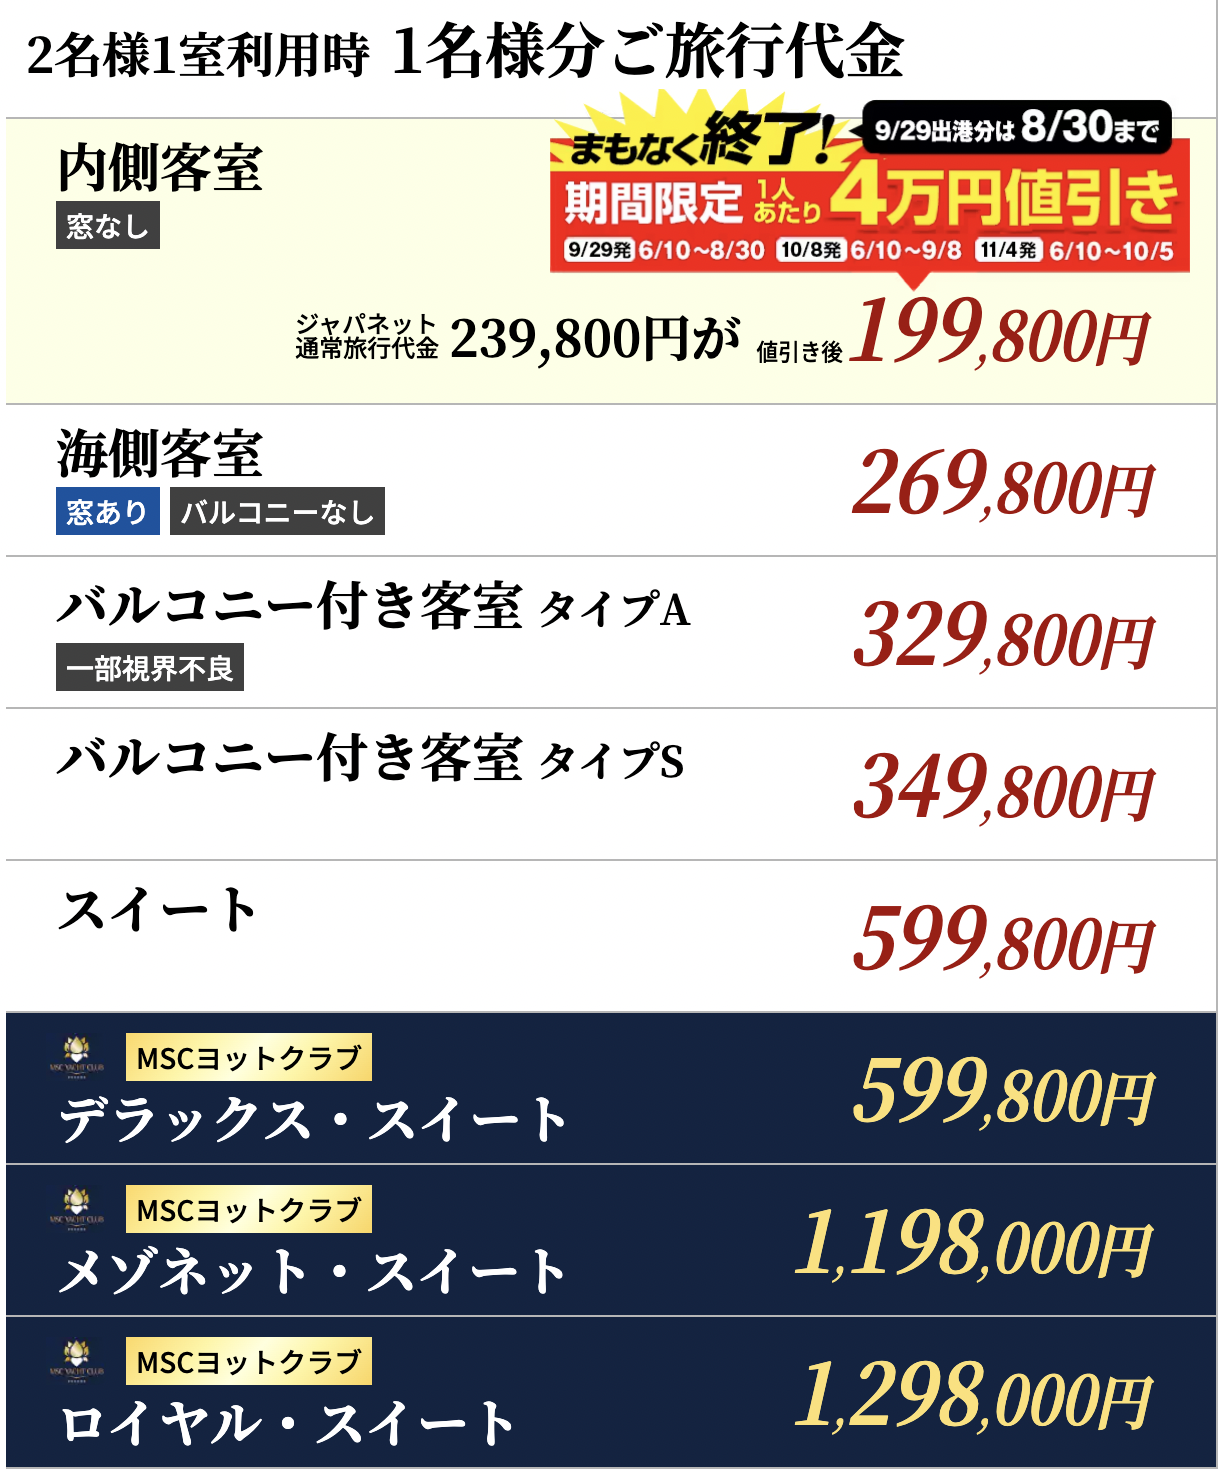 クルーズ料金 199 800円~